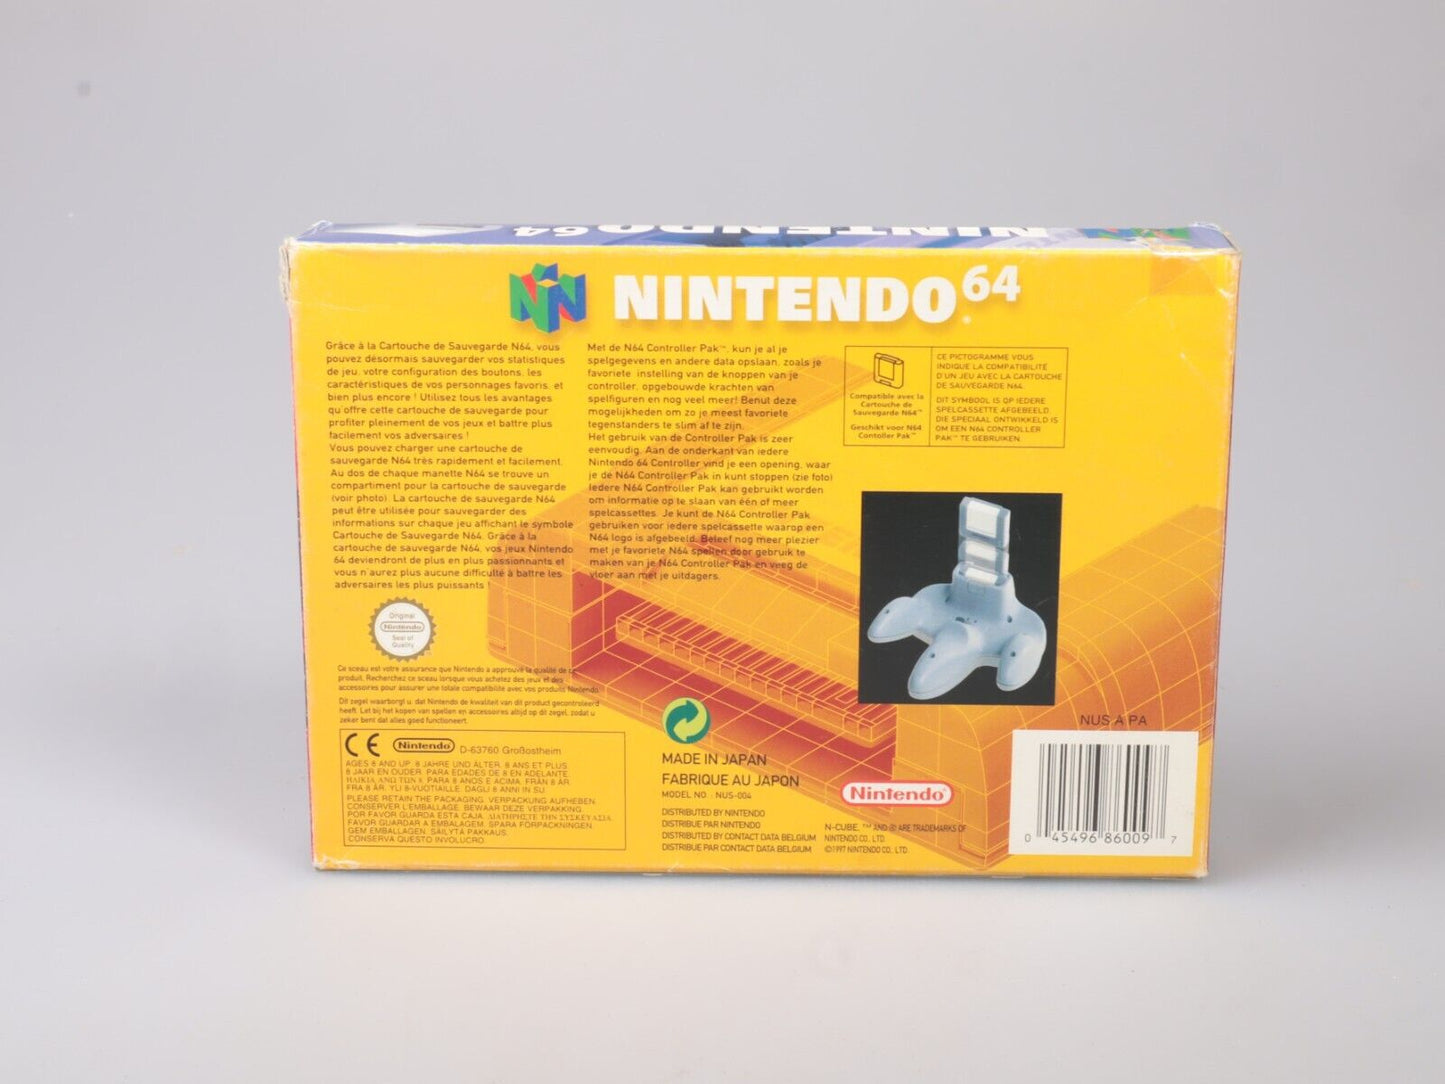 N64 | Nintendo 64 Controller Pak | Boxed | Official Nintendo 64